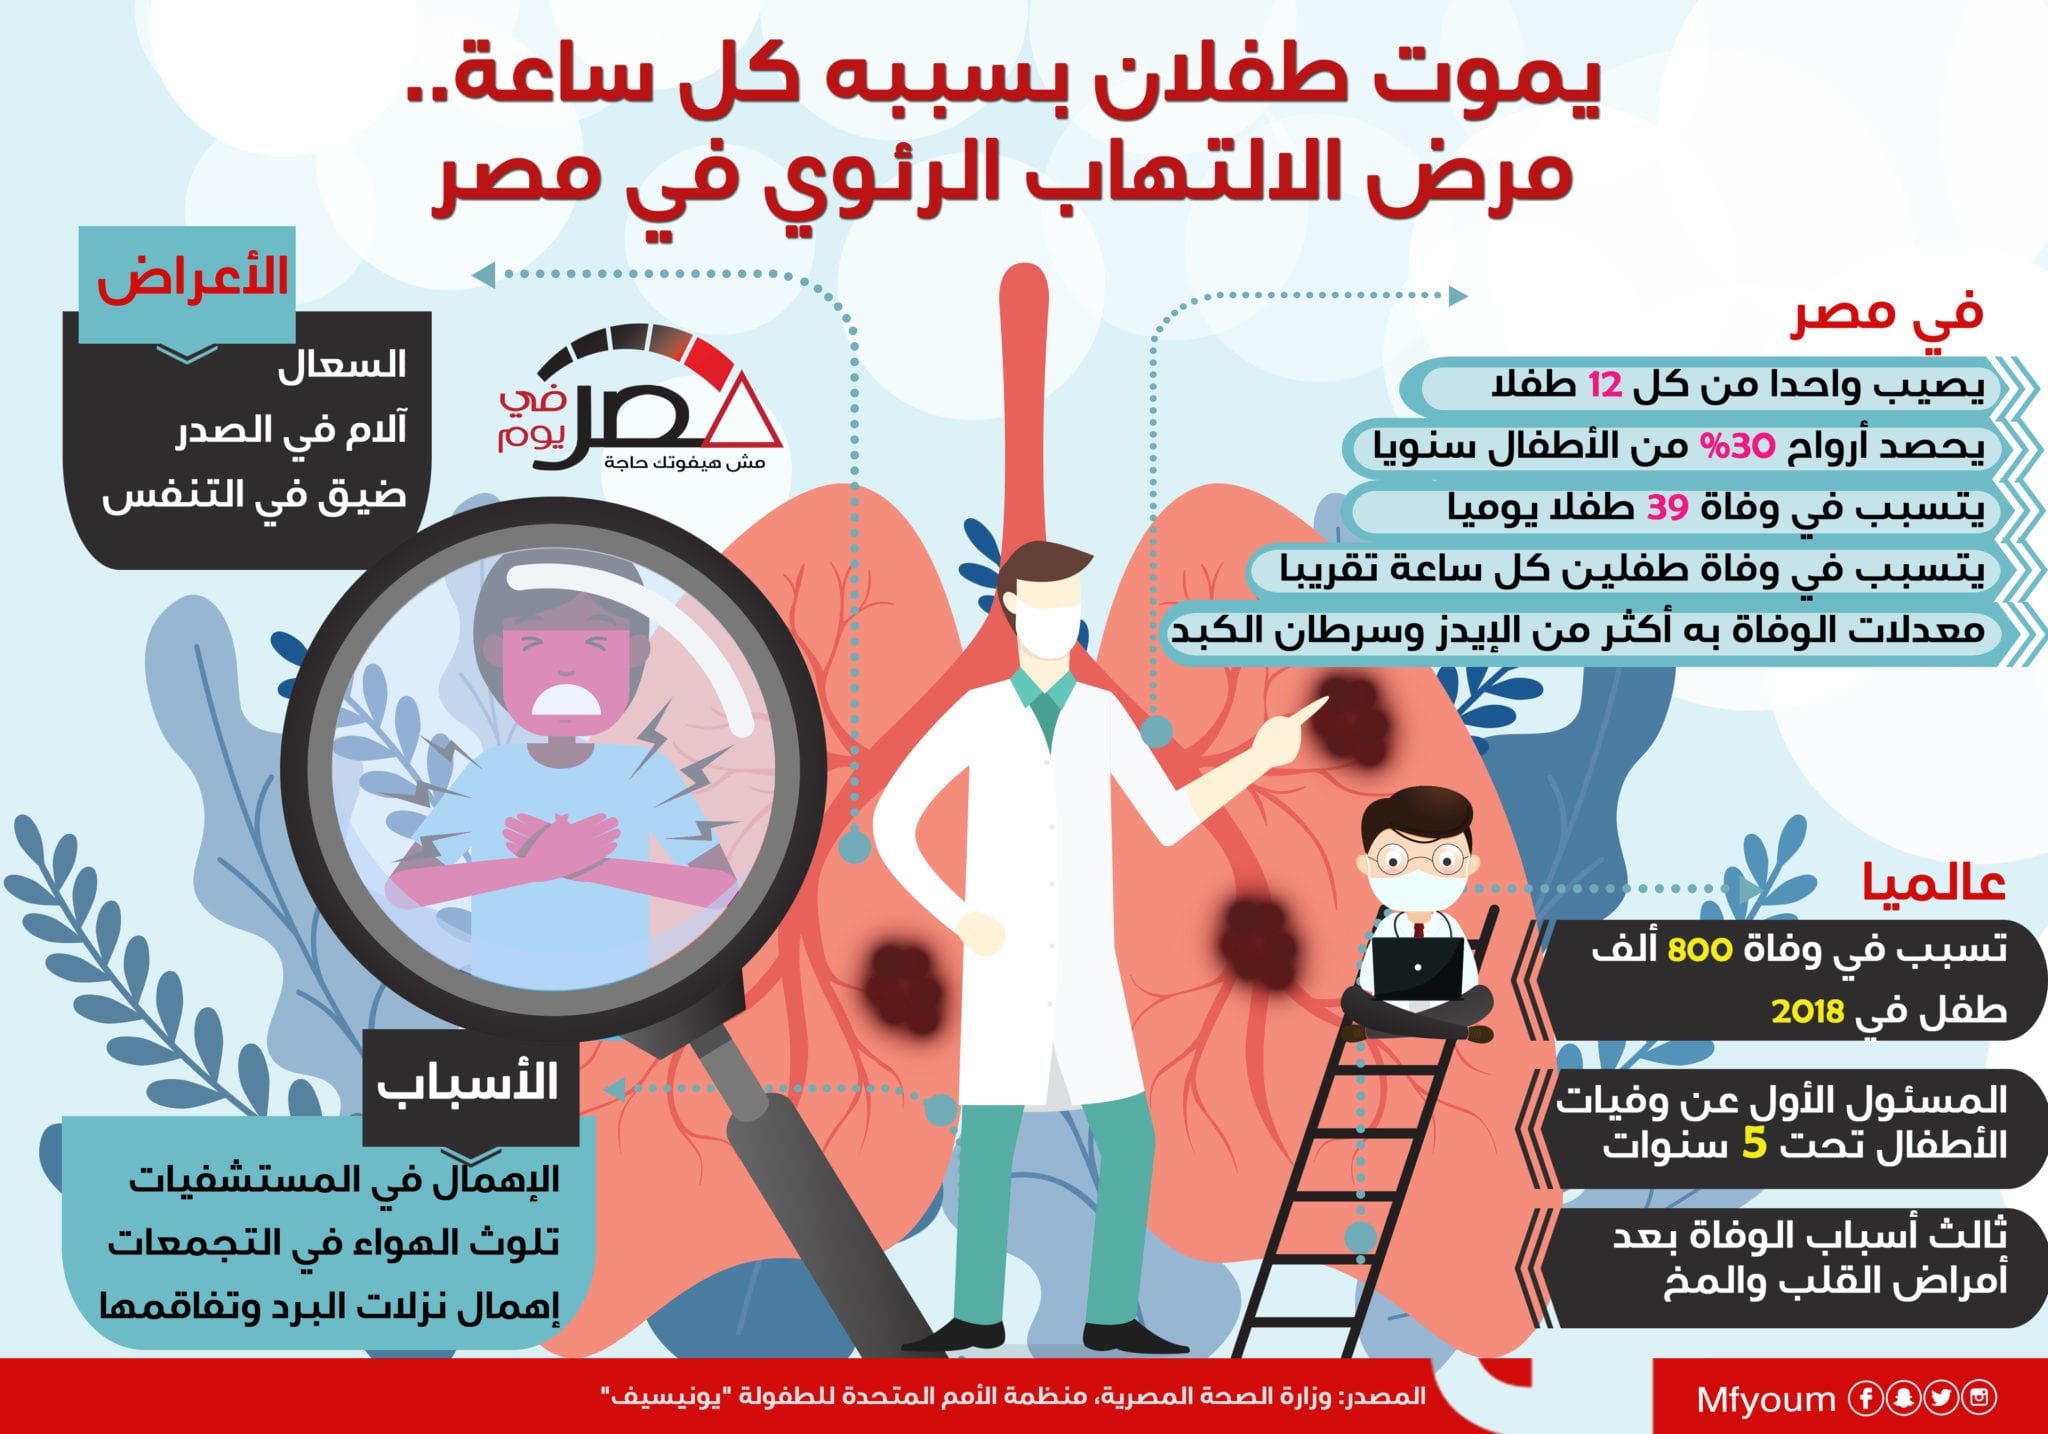 يموت طفلان بسببه كل ساعة.. مرض الالتهاب الرئوي في مصر (إنفوجراف)